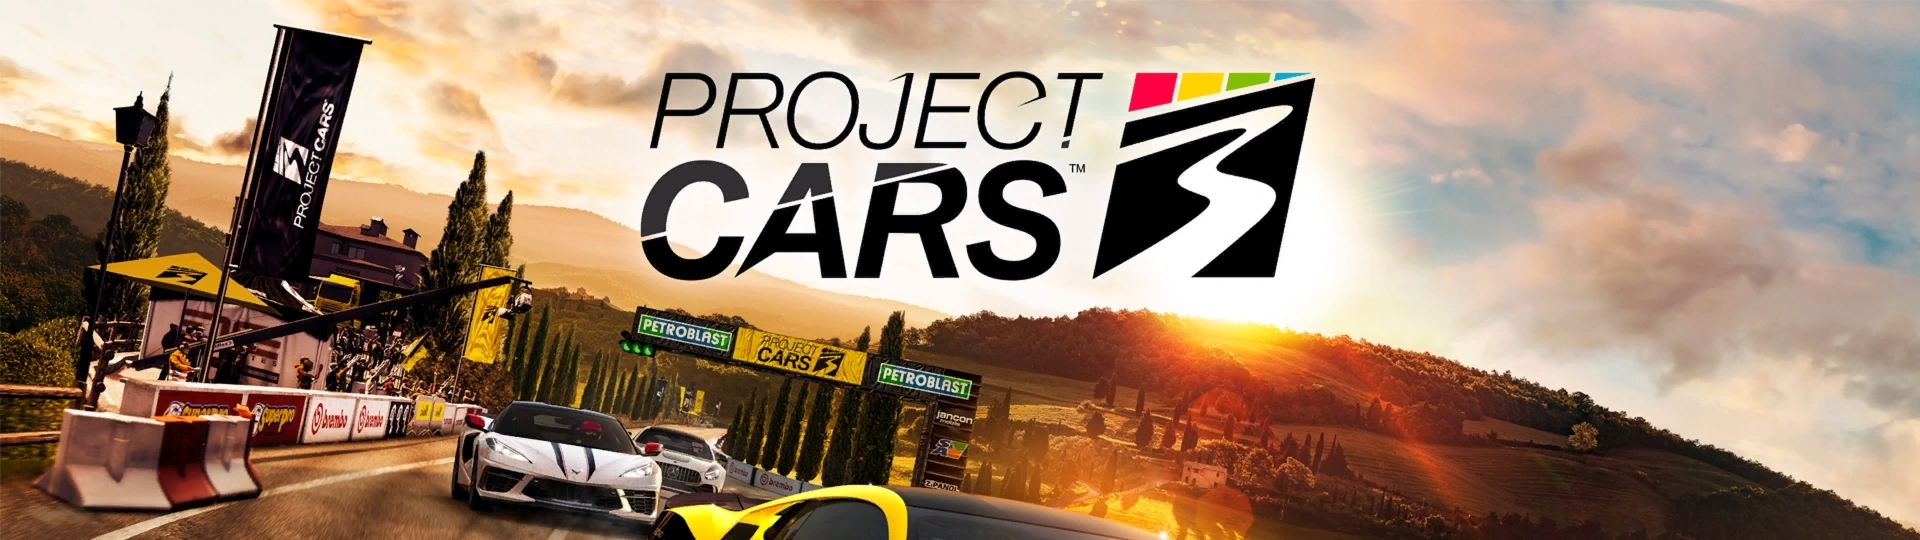 Project Cars 3 – tentokrát s arkádovými prvky | Recenze